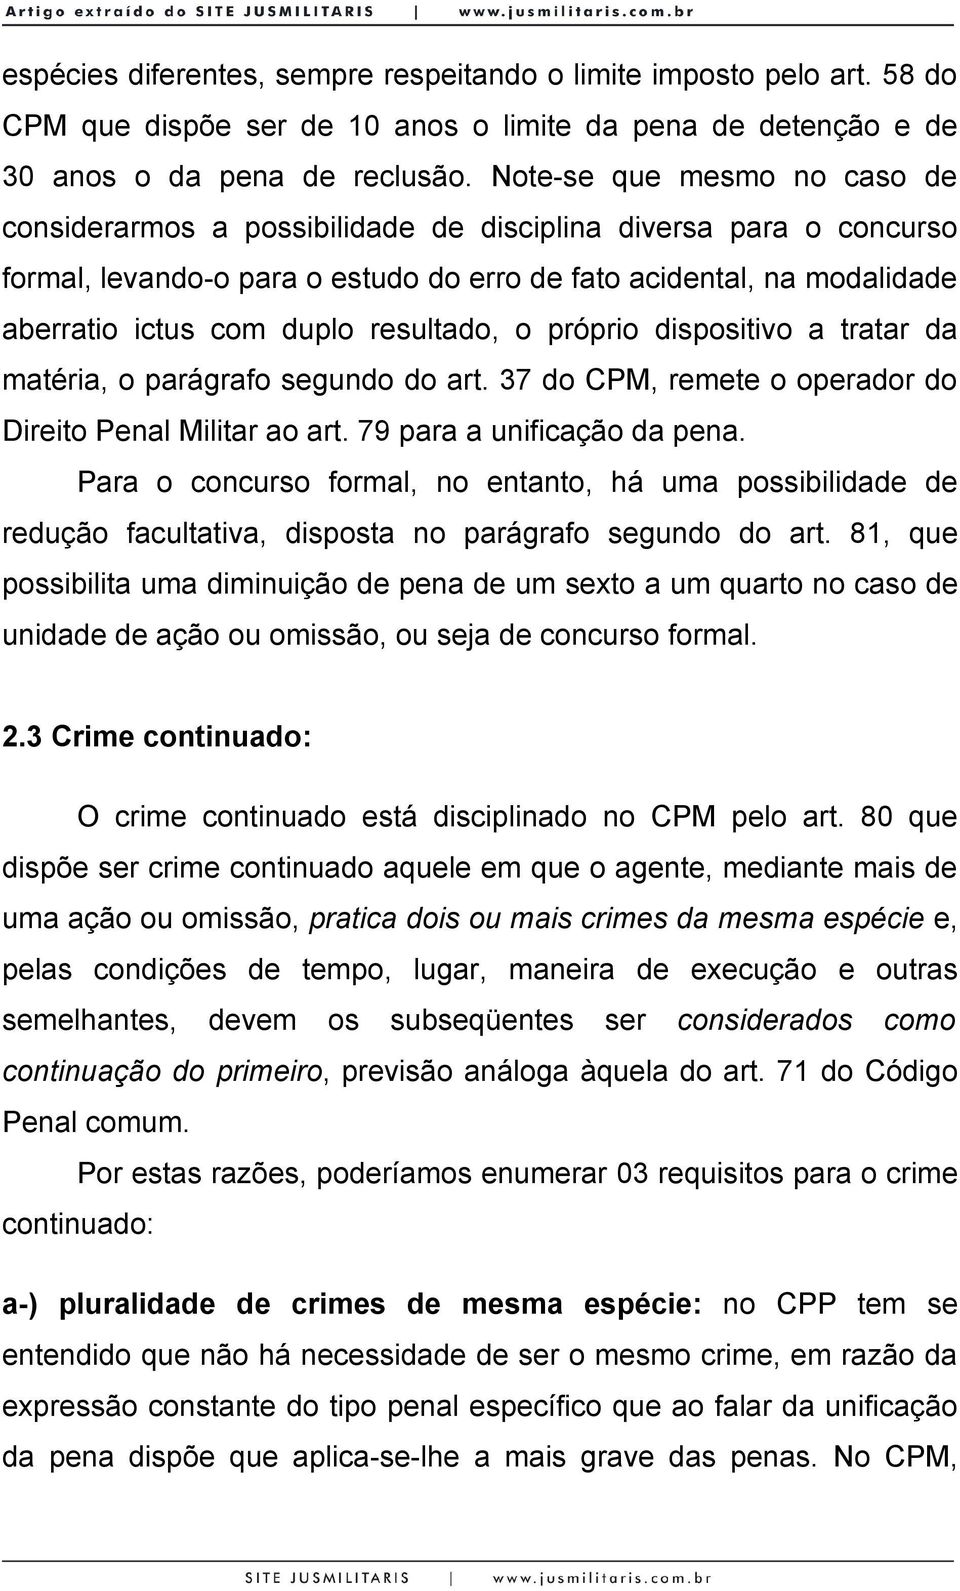 resultado, o próprio dispositivo a tratar da matéria, o parágrafo segundo do art. 37 do CPM, remete o operador do Direito Penal Militar ao art. 79 para a unificação da pena.